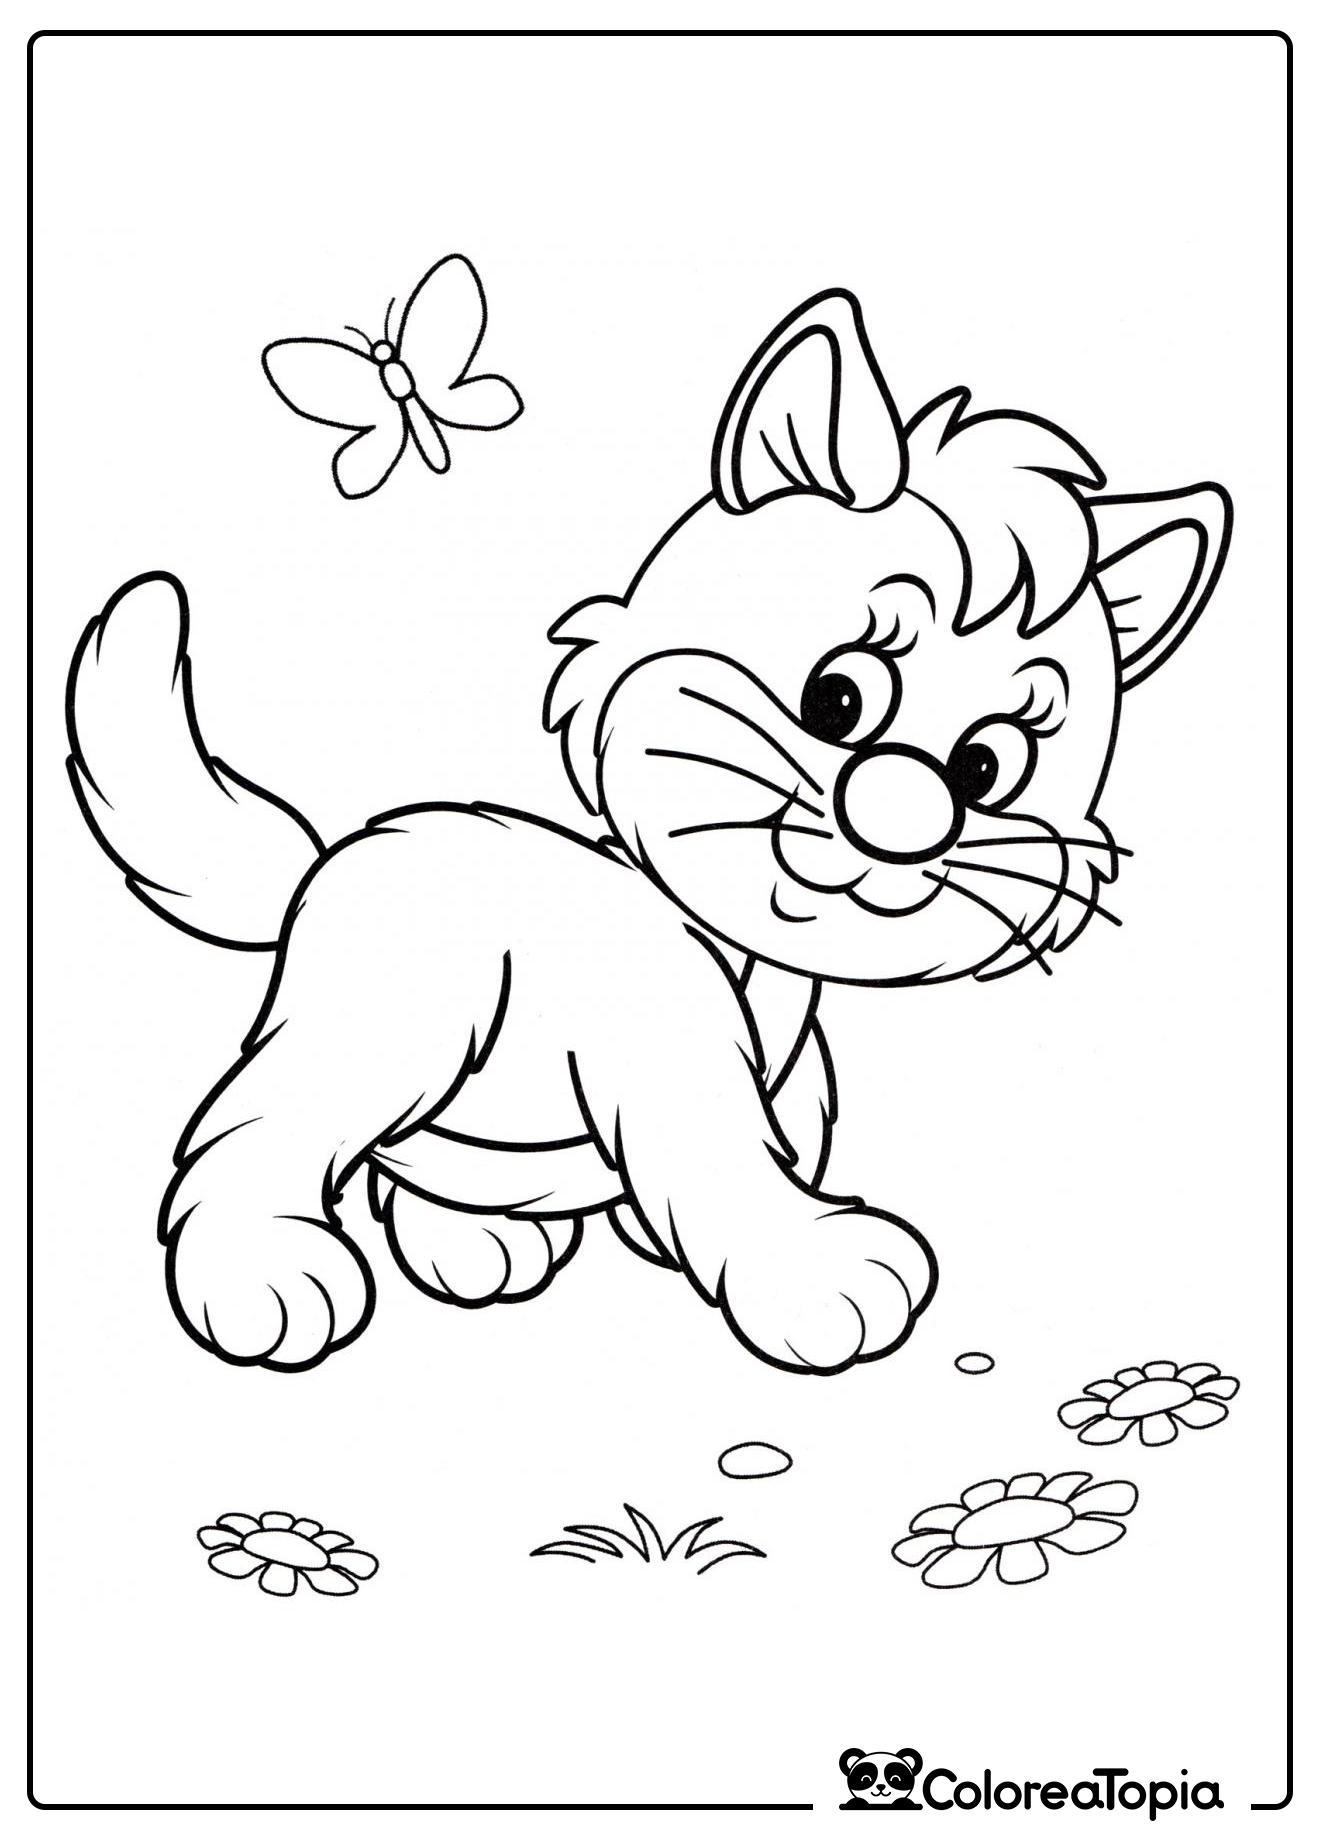 La gatita pasea - dibujo para colorear